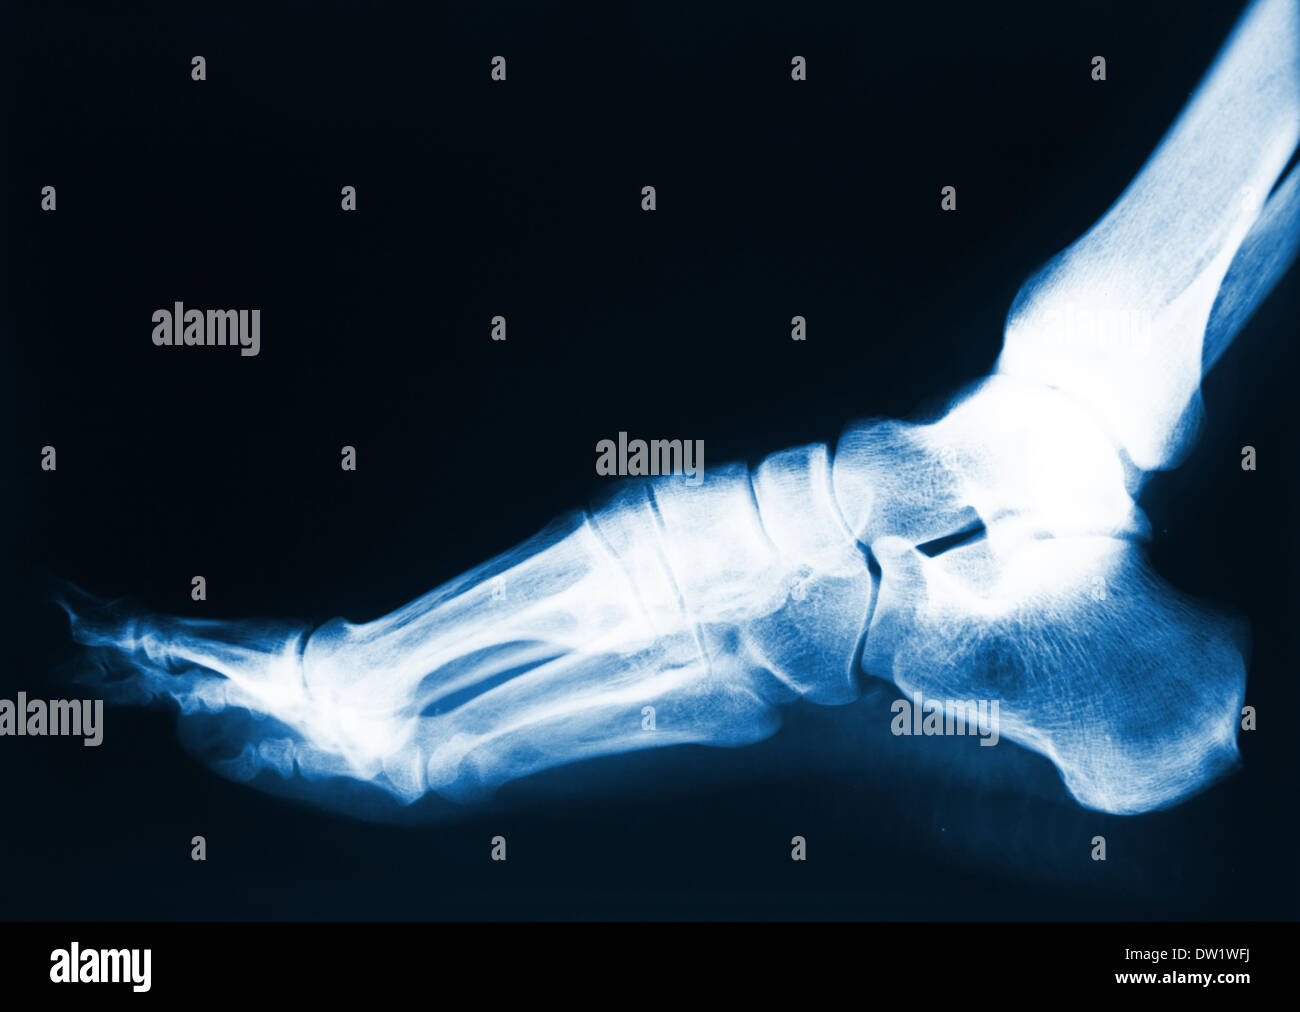 foot x-ray Stock Photo